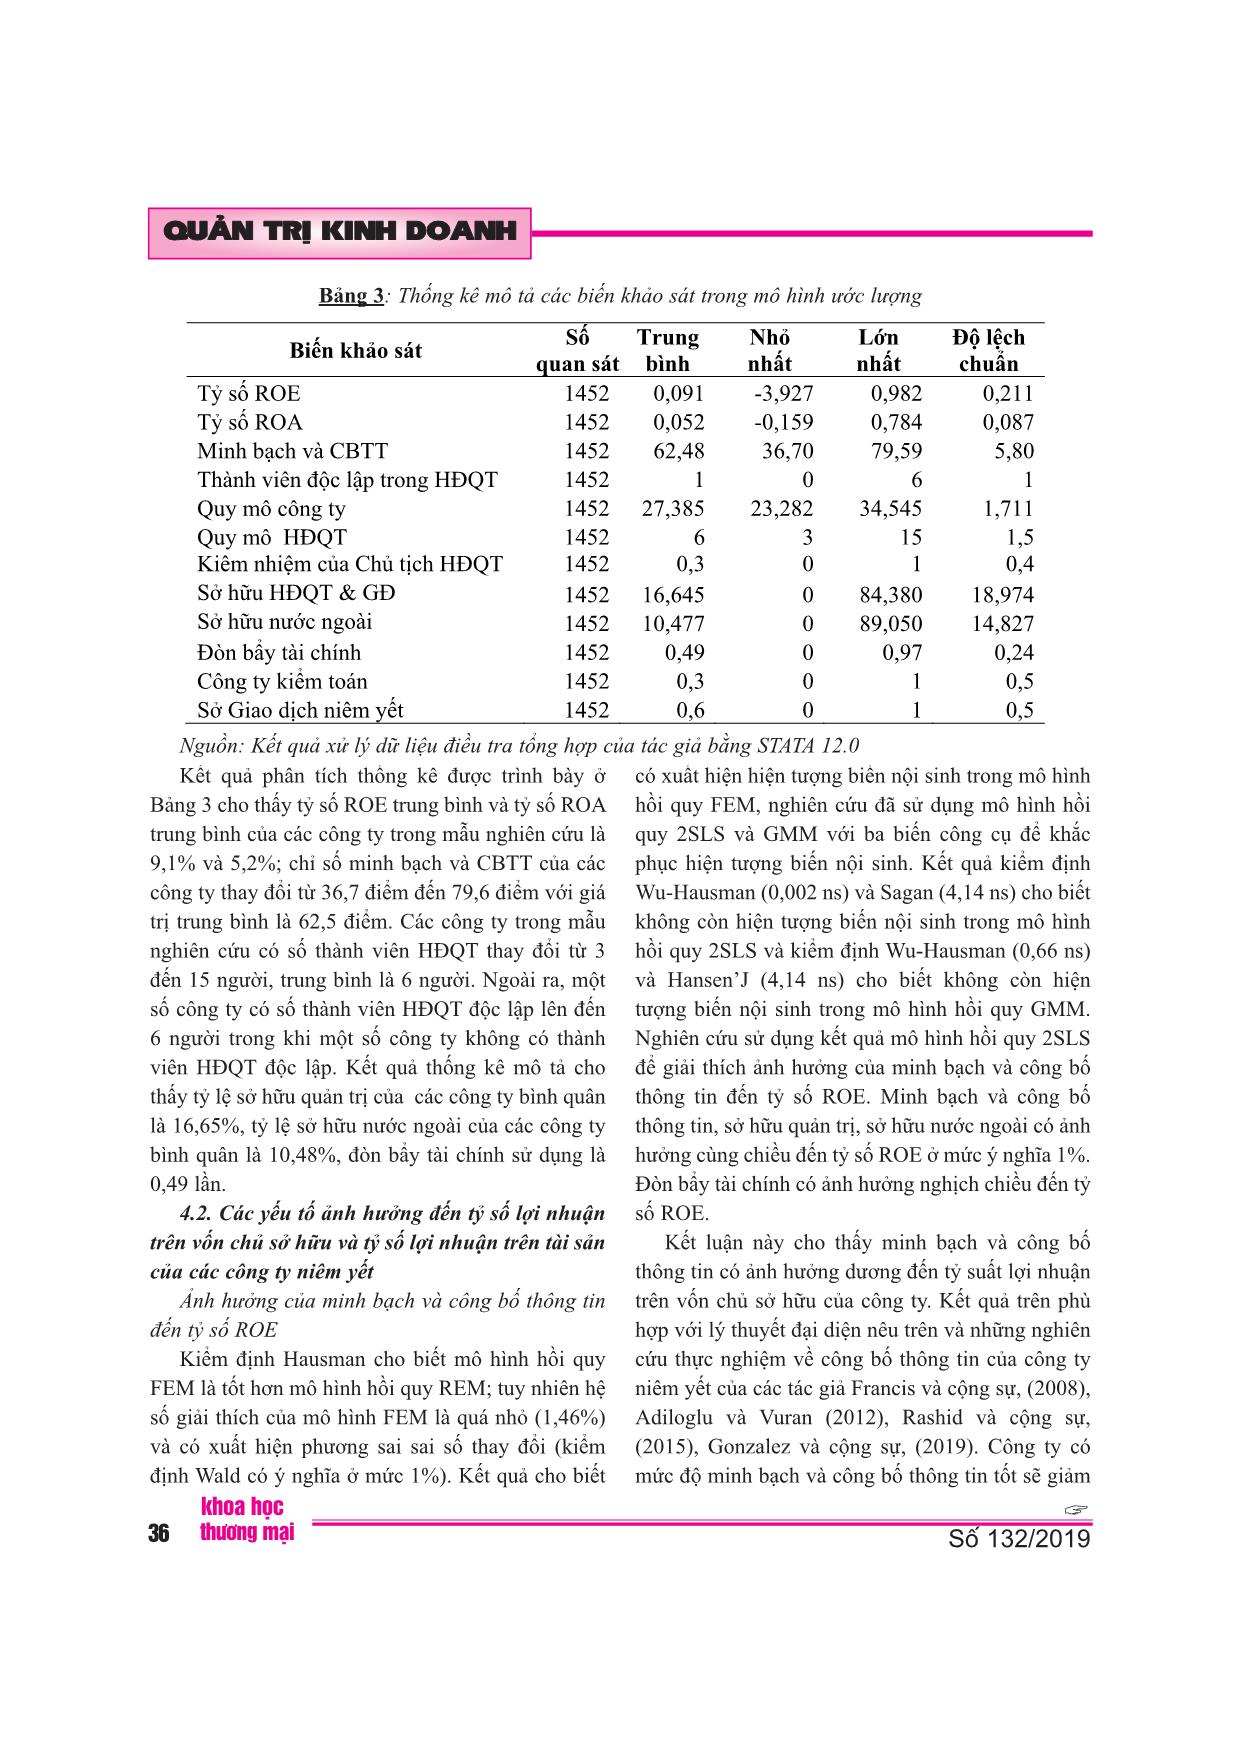 Ảnh hưởng của mức độ minh bạch và công bố thông tin đến hiệu quả tài chính của công ty niêm yết trên thị trường chứng khoán Việt Nam trang 7